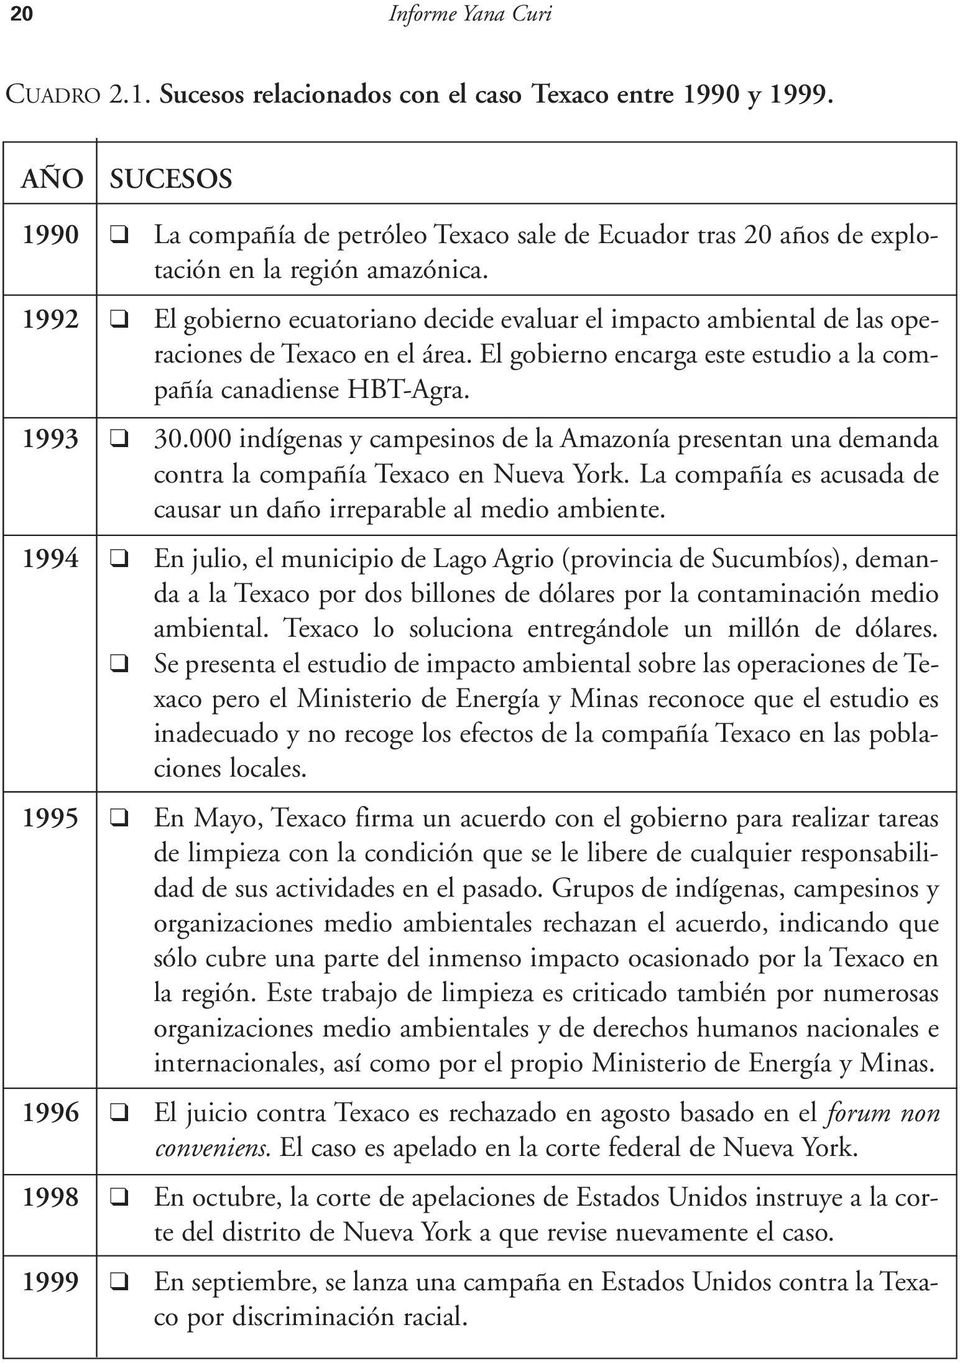 1992 El gobierno ecuatoriano decide evaluar el impacto ambiental de las operaciones de Texaco en el área. El gobierno encarga este estudio a la compañía canadiense HBT-Agra. 1993 30.